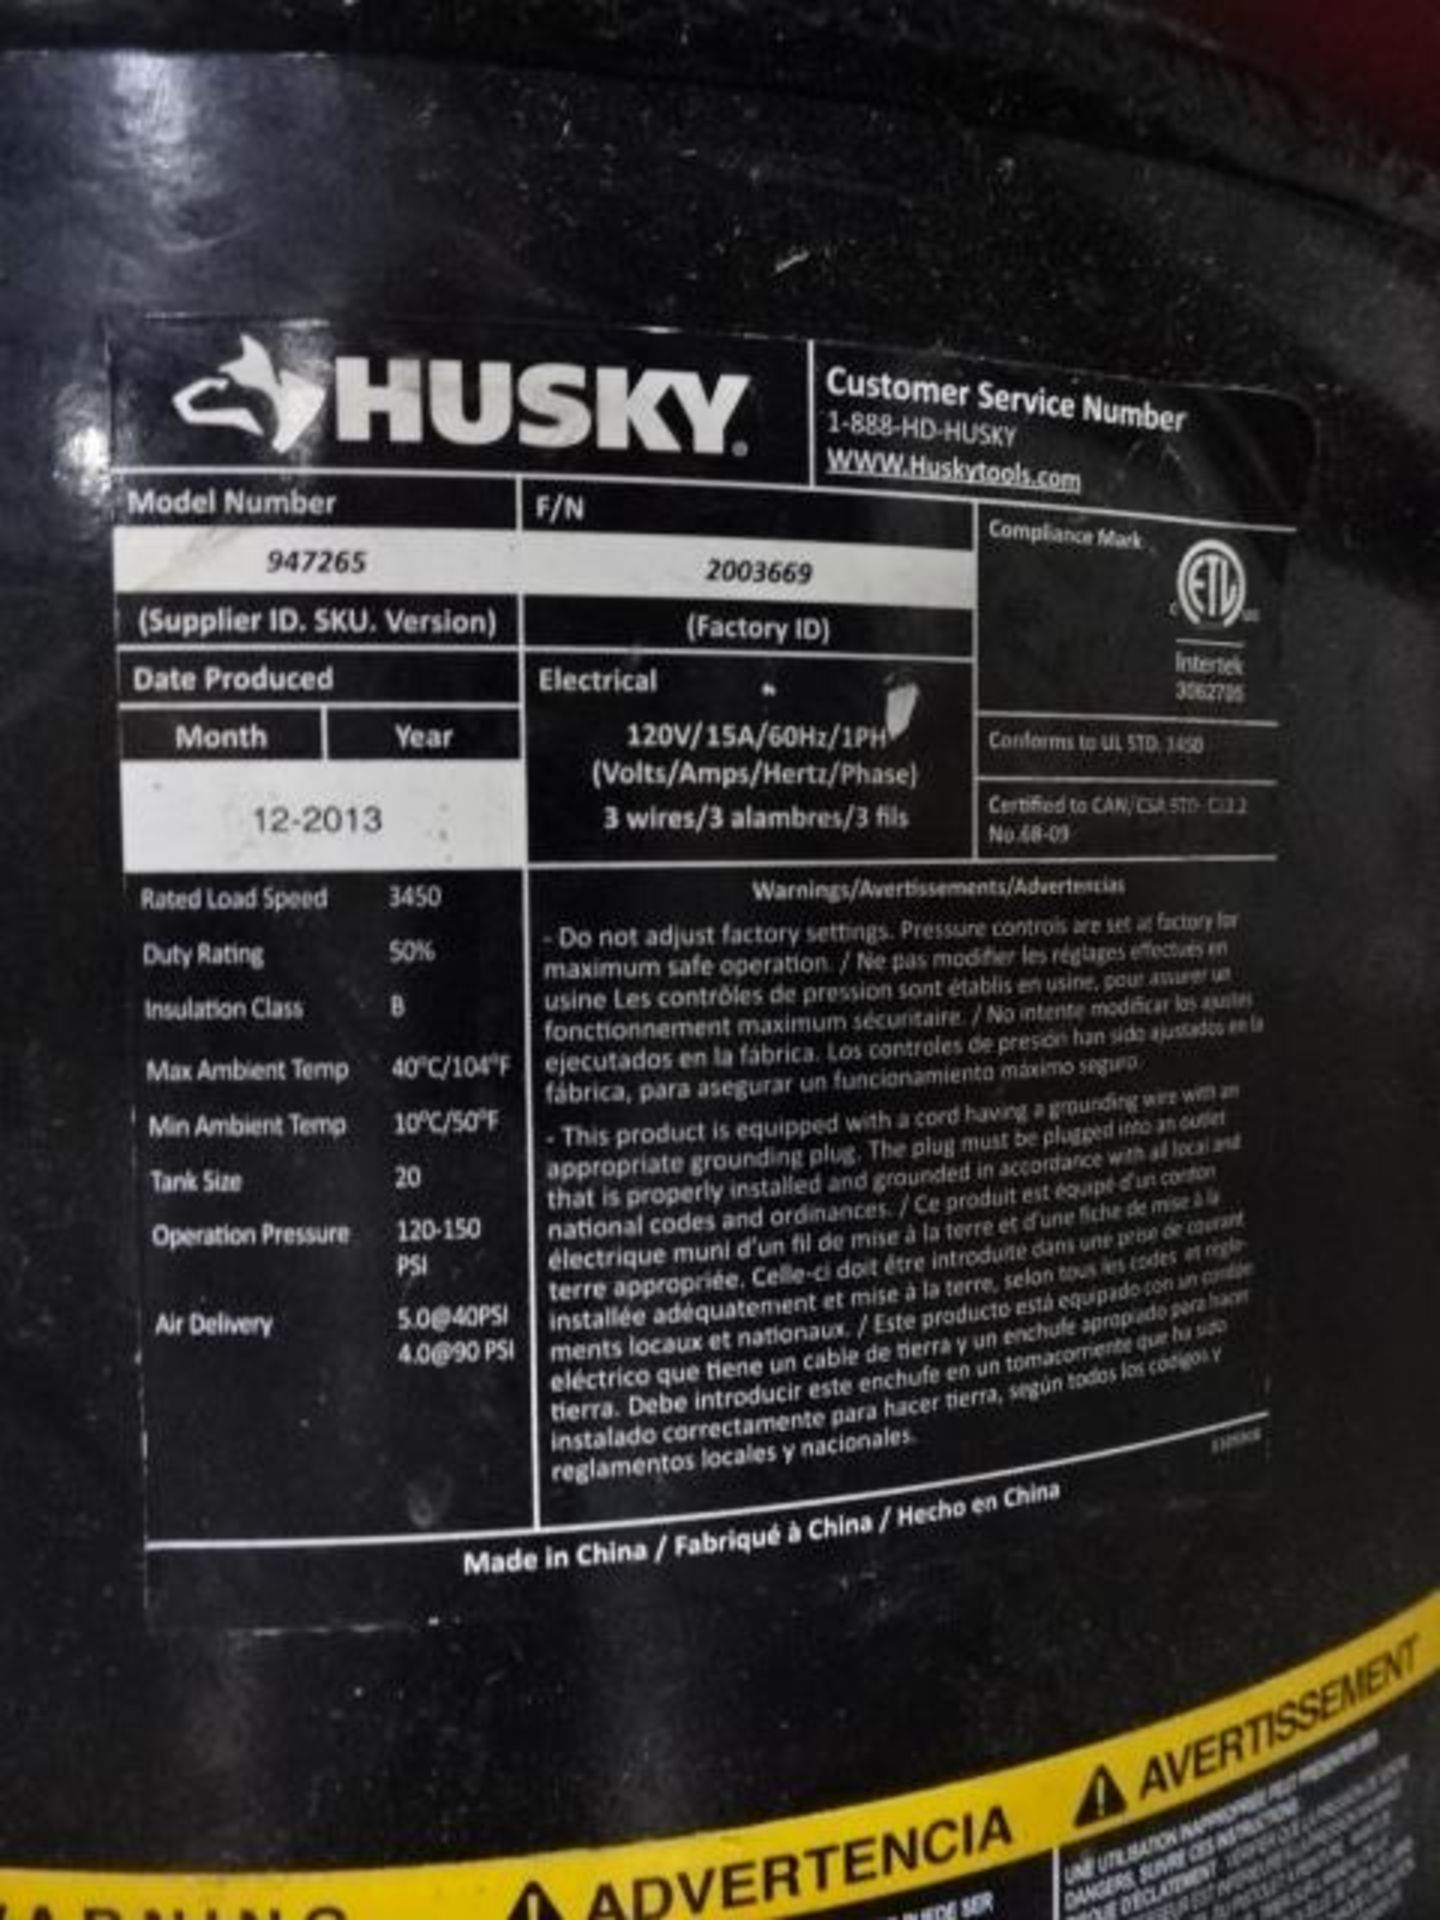 Husky Portable Air Compressor - Image 2 of 2